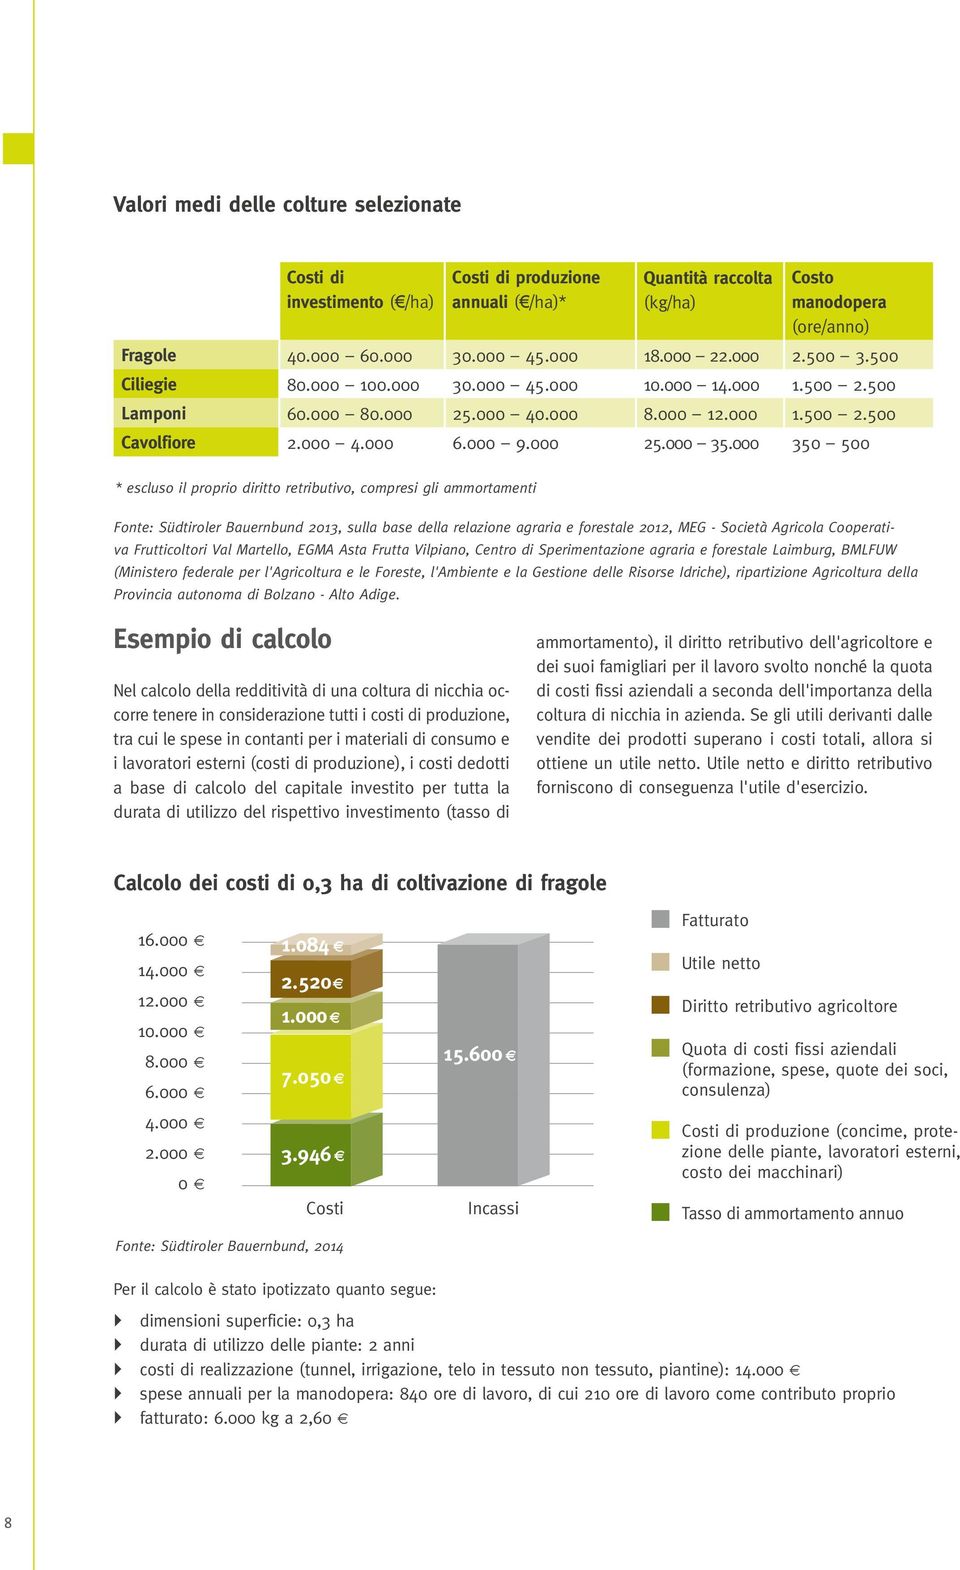 000 350 500 * escluso il proprio diritto retributivo, compresi gli ammortamenti Fonte: Südtiroler Bauernbund 2013, sulla base della relazione agraria e forestale 2012, MEG - Società Agricola